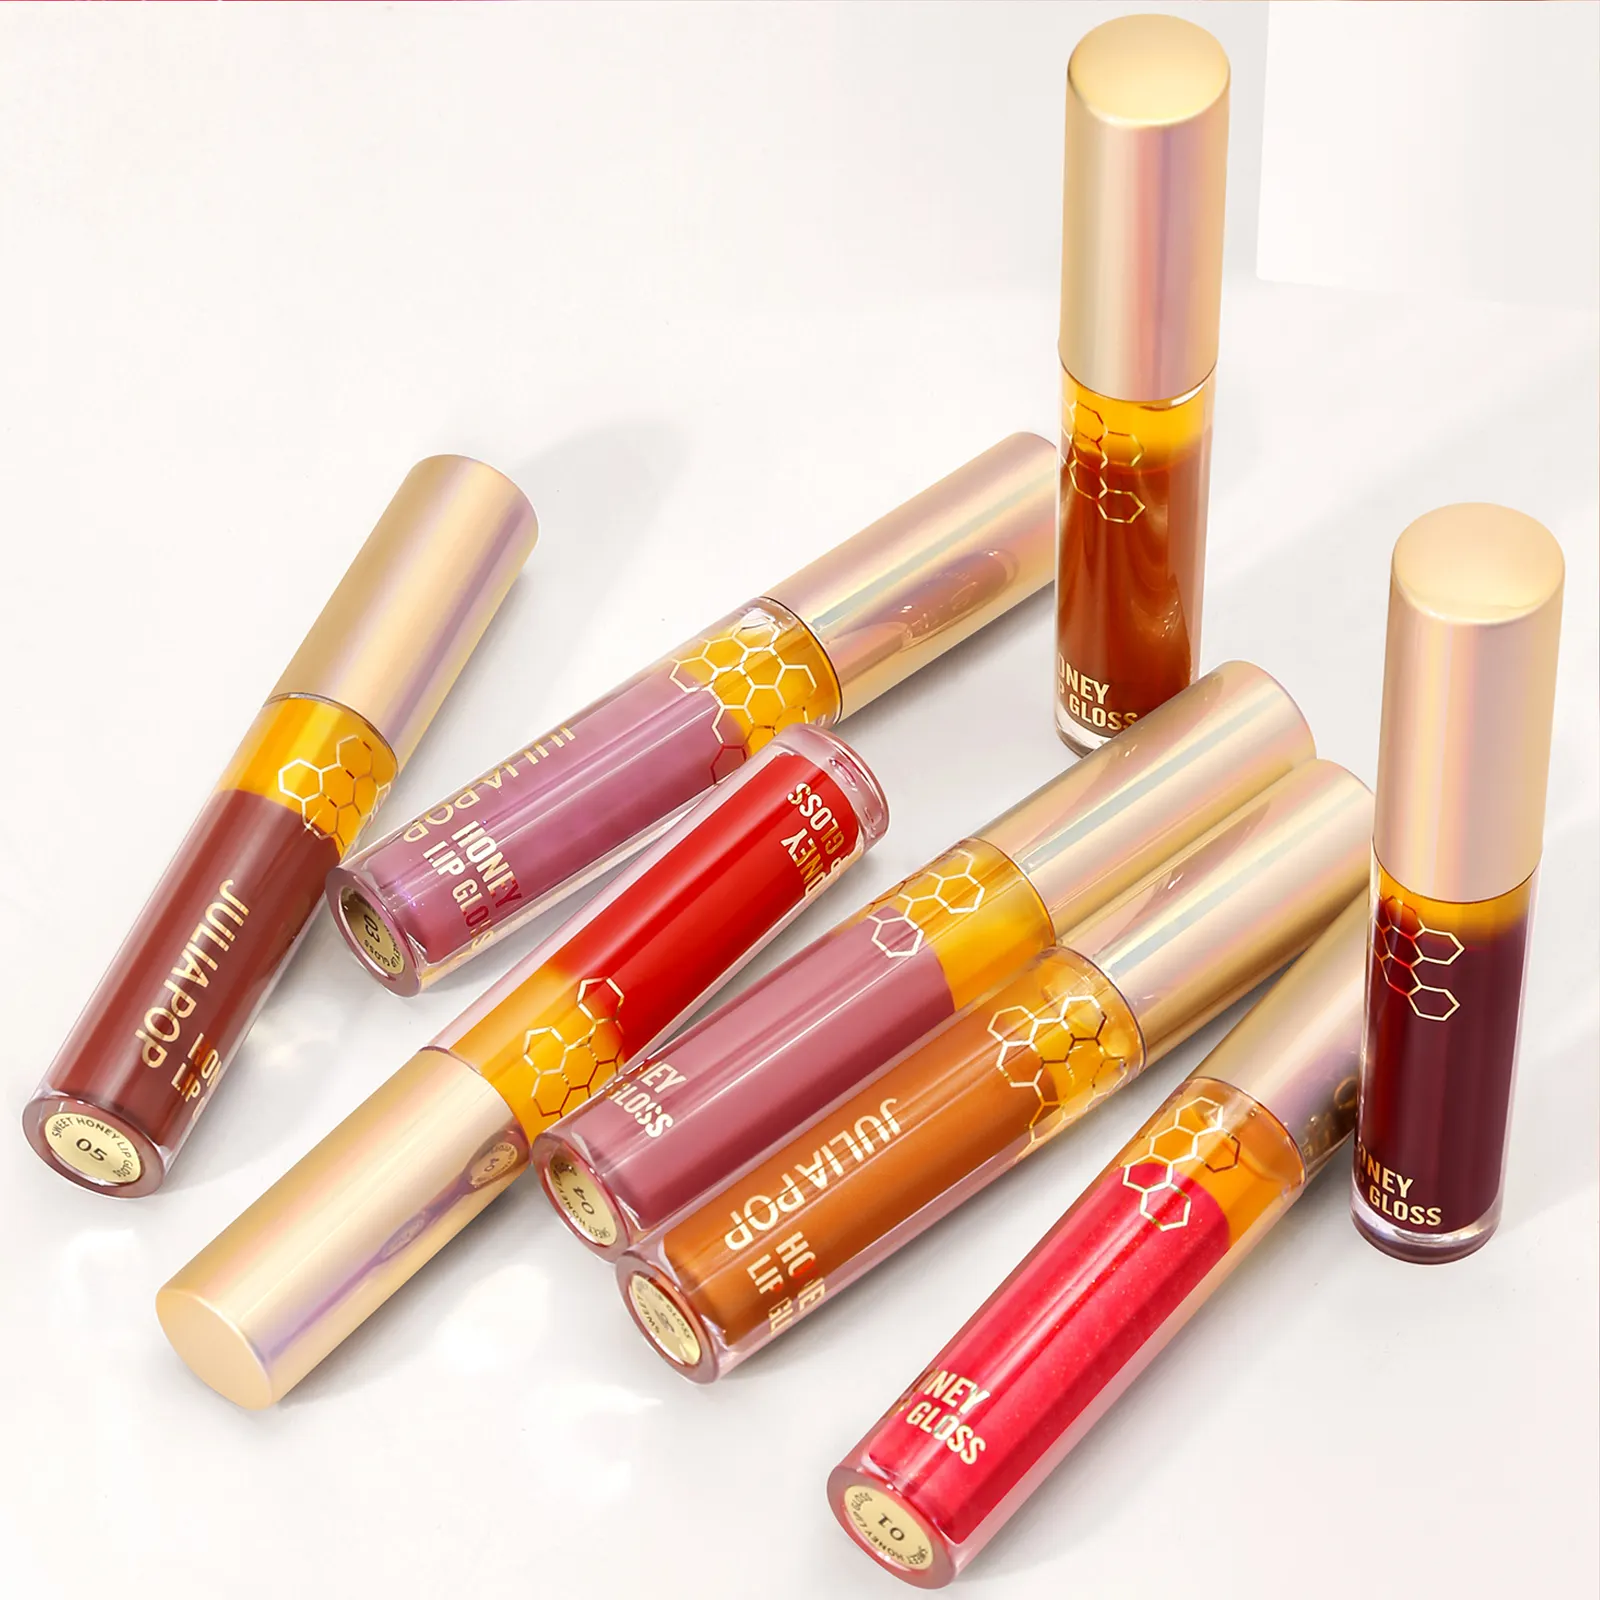 Erstellen Sie Ihre eigene Marke Kosmetik Großhandel Vegan Vendor Moist urizing Smooth Liquid Lipstick Lip gloss